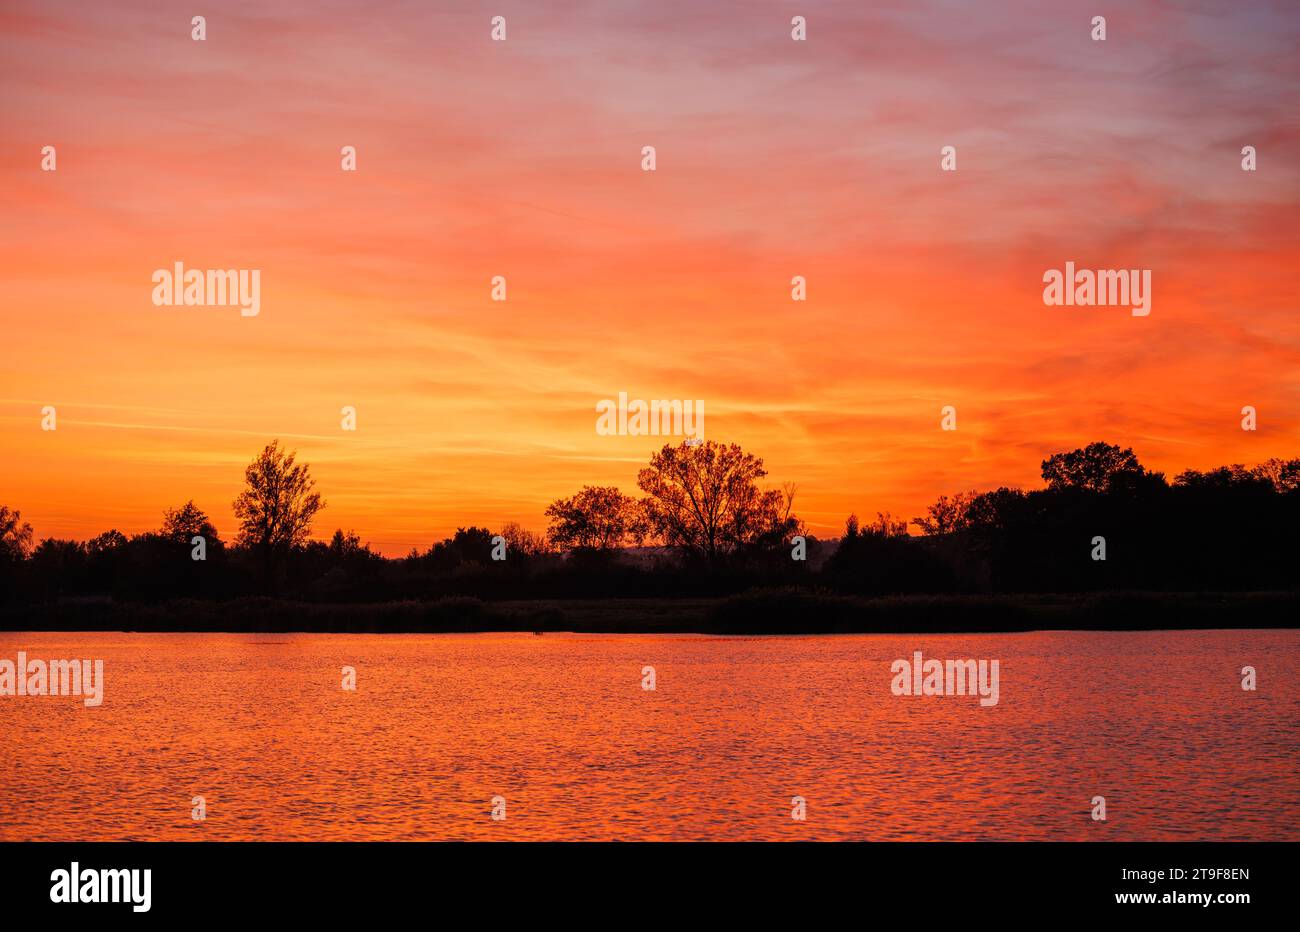 Réflexion du beau ciel orange coucher de soleil sur le lac de surface de l'eau. Paysage de la nature avec espace de copie Banque D'Images